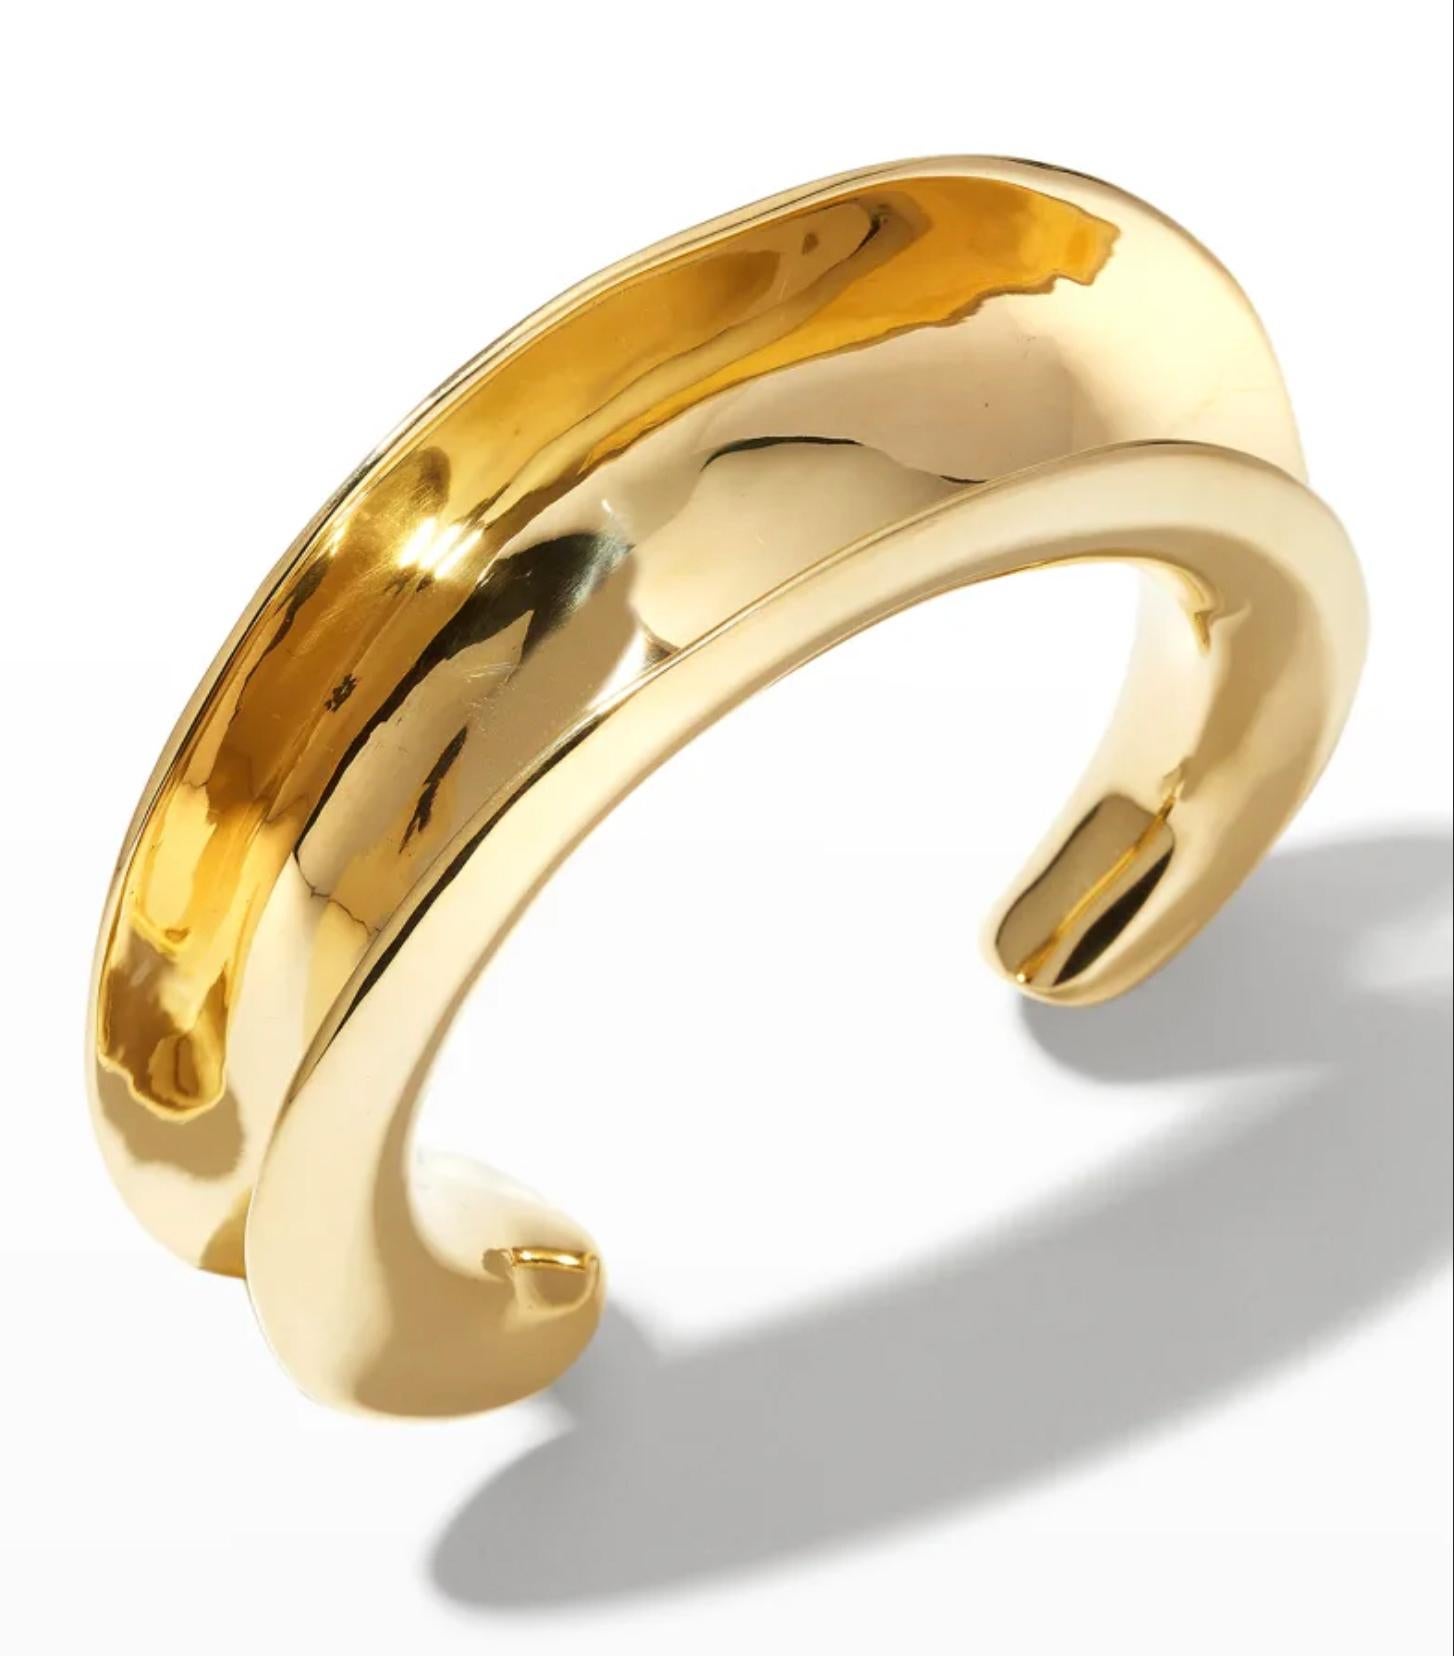 Modernist Ariana Boussard-Reifel Bast Gold Bronze Sculptural Modern Cuff Bracelet For Sale